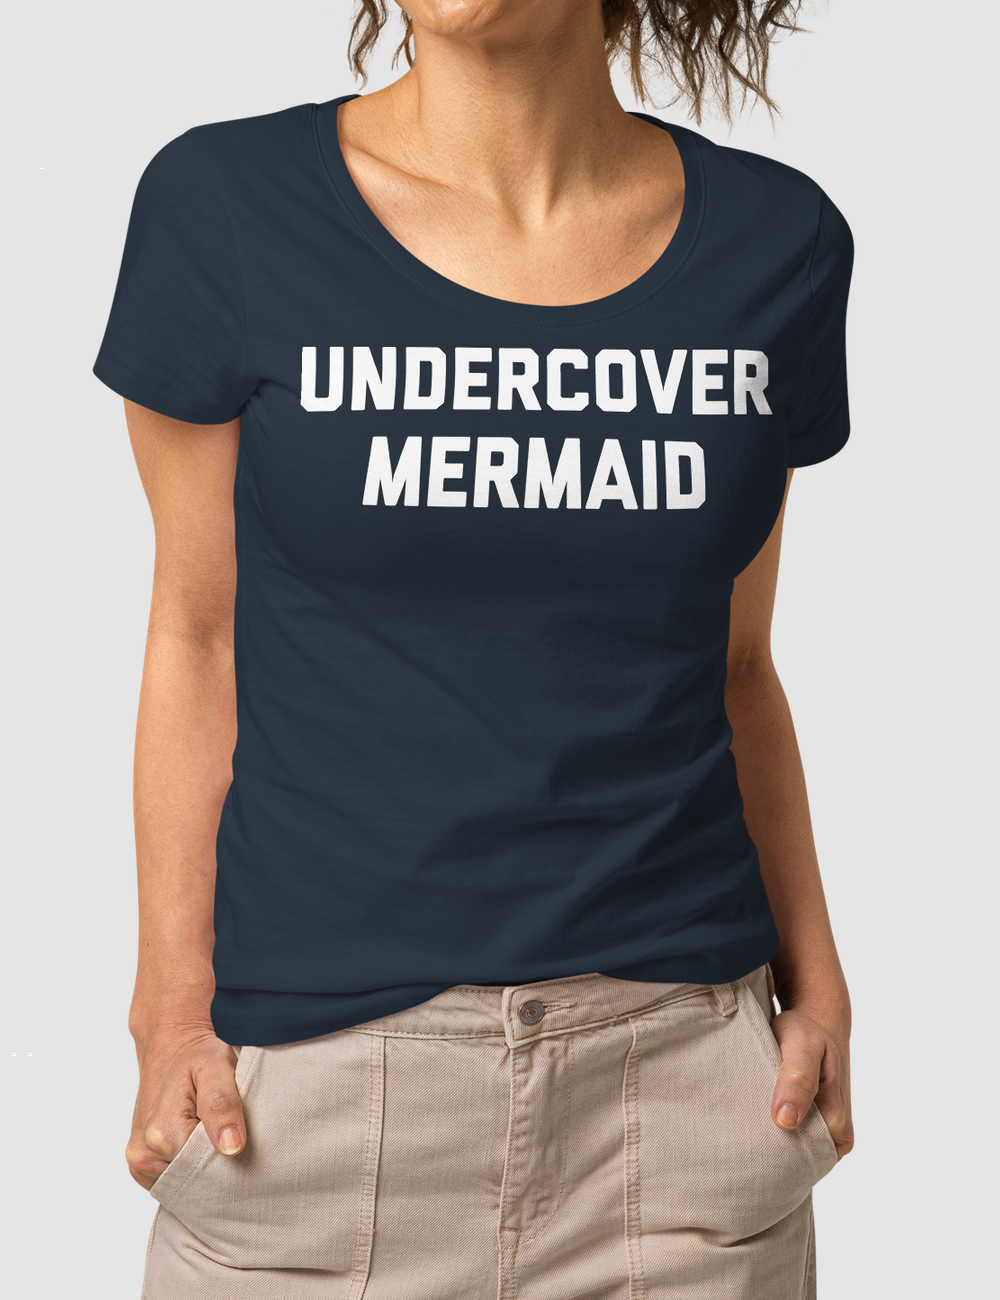 Undercover Mermaid Women's Organic Round Neck T-Shirt OniTakai